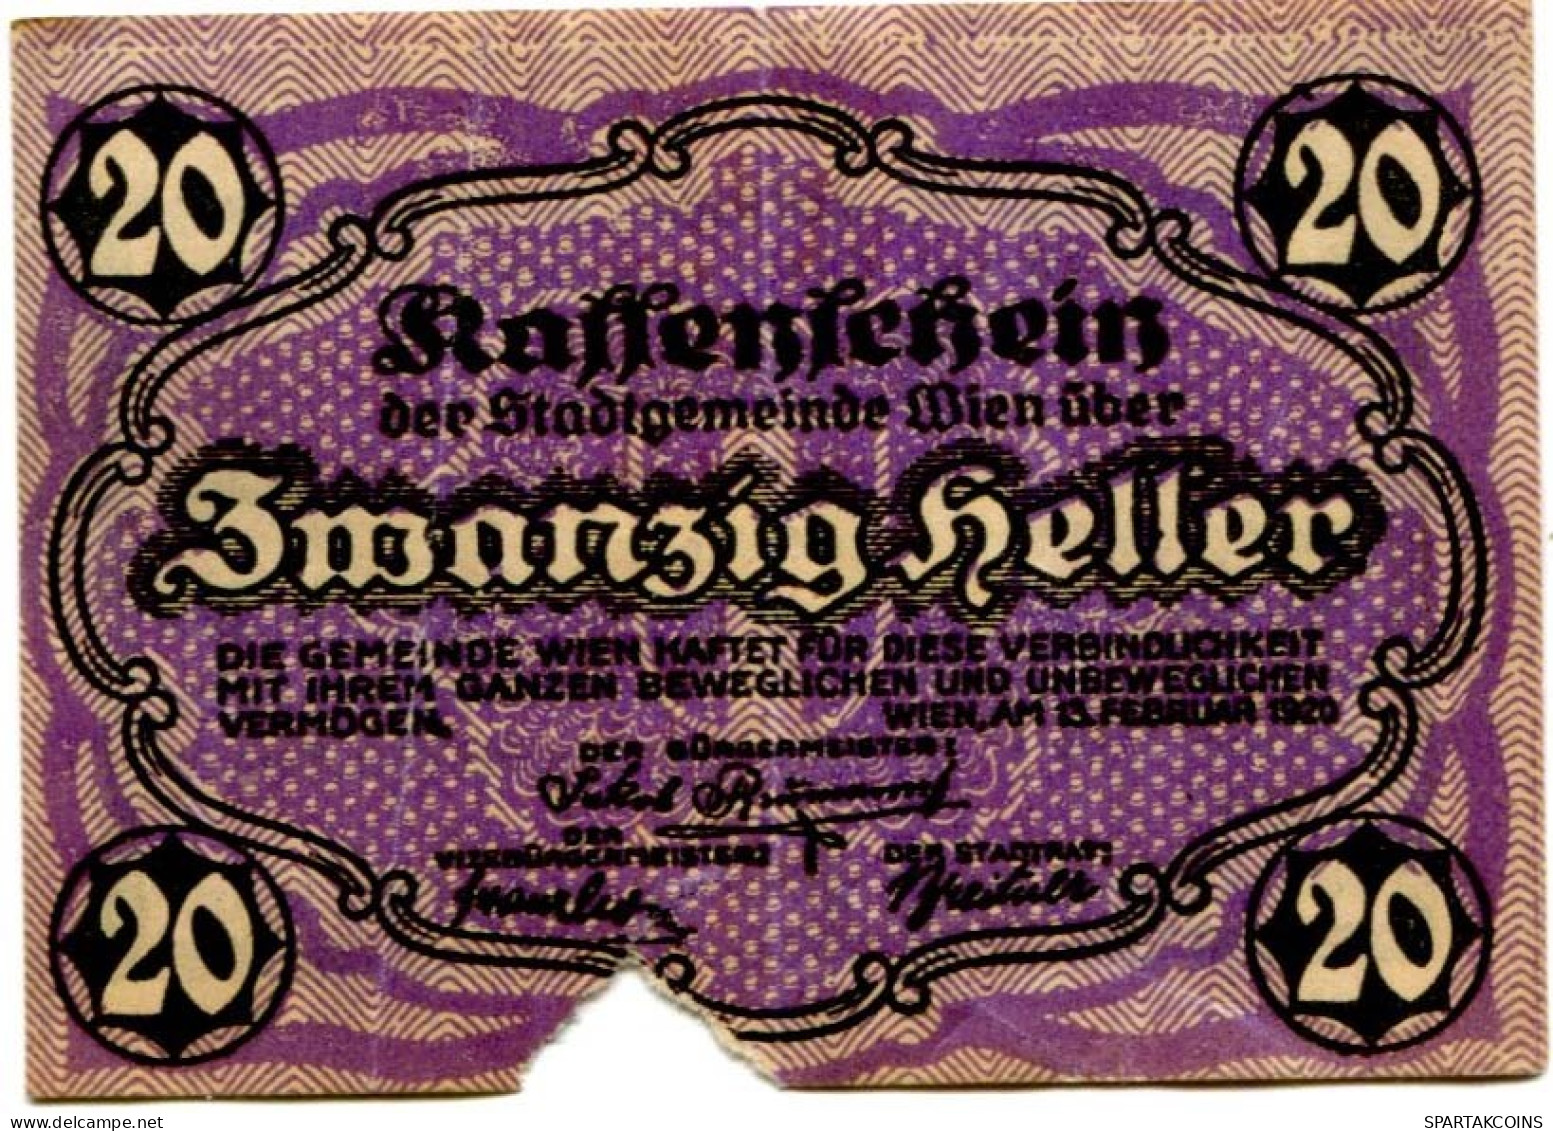 20 HELLER 1920 Stadt Wien Österreich Notgeld Papiergeld Banknote #PL569 - Lokale Ausgaben